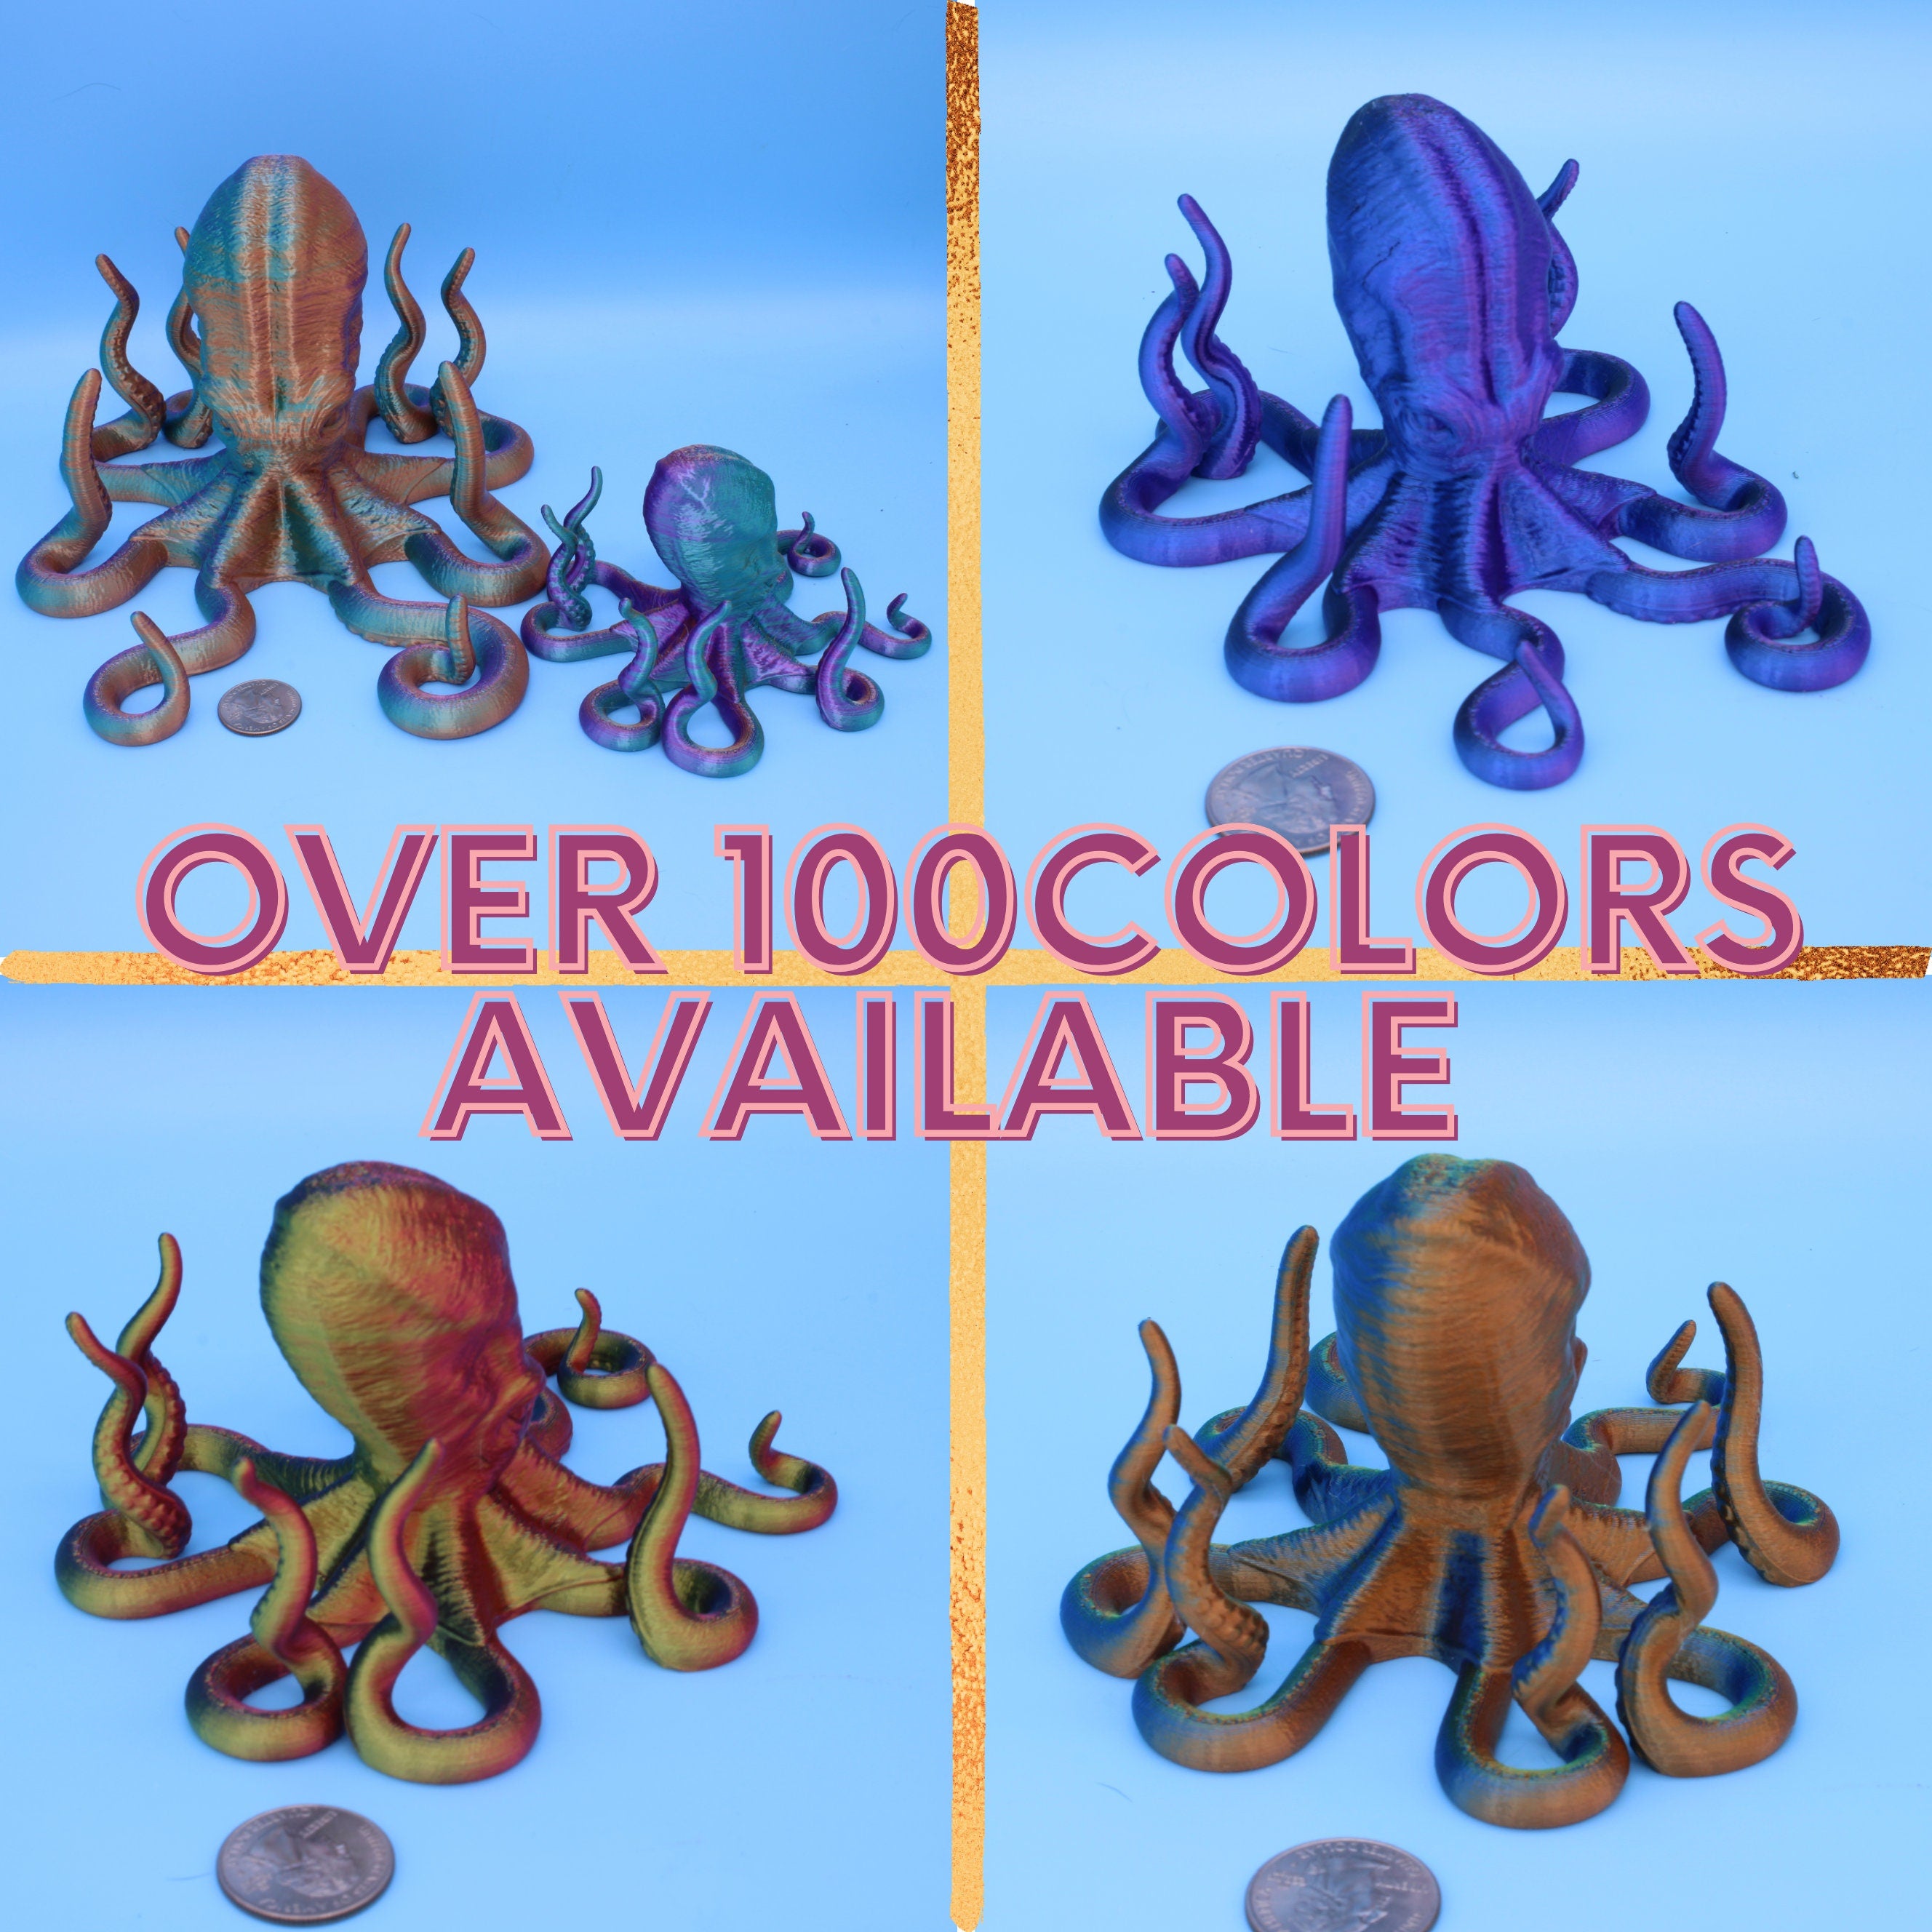 Octopus Art / Phone / Tablet - 3D Printed